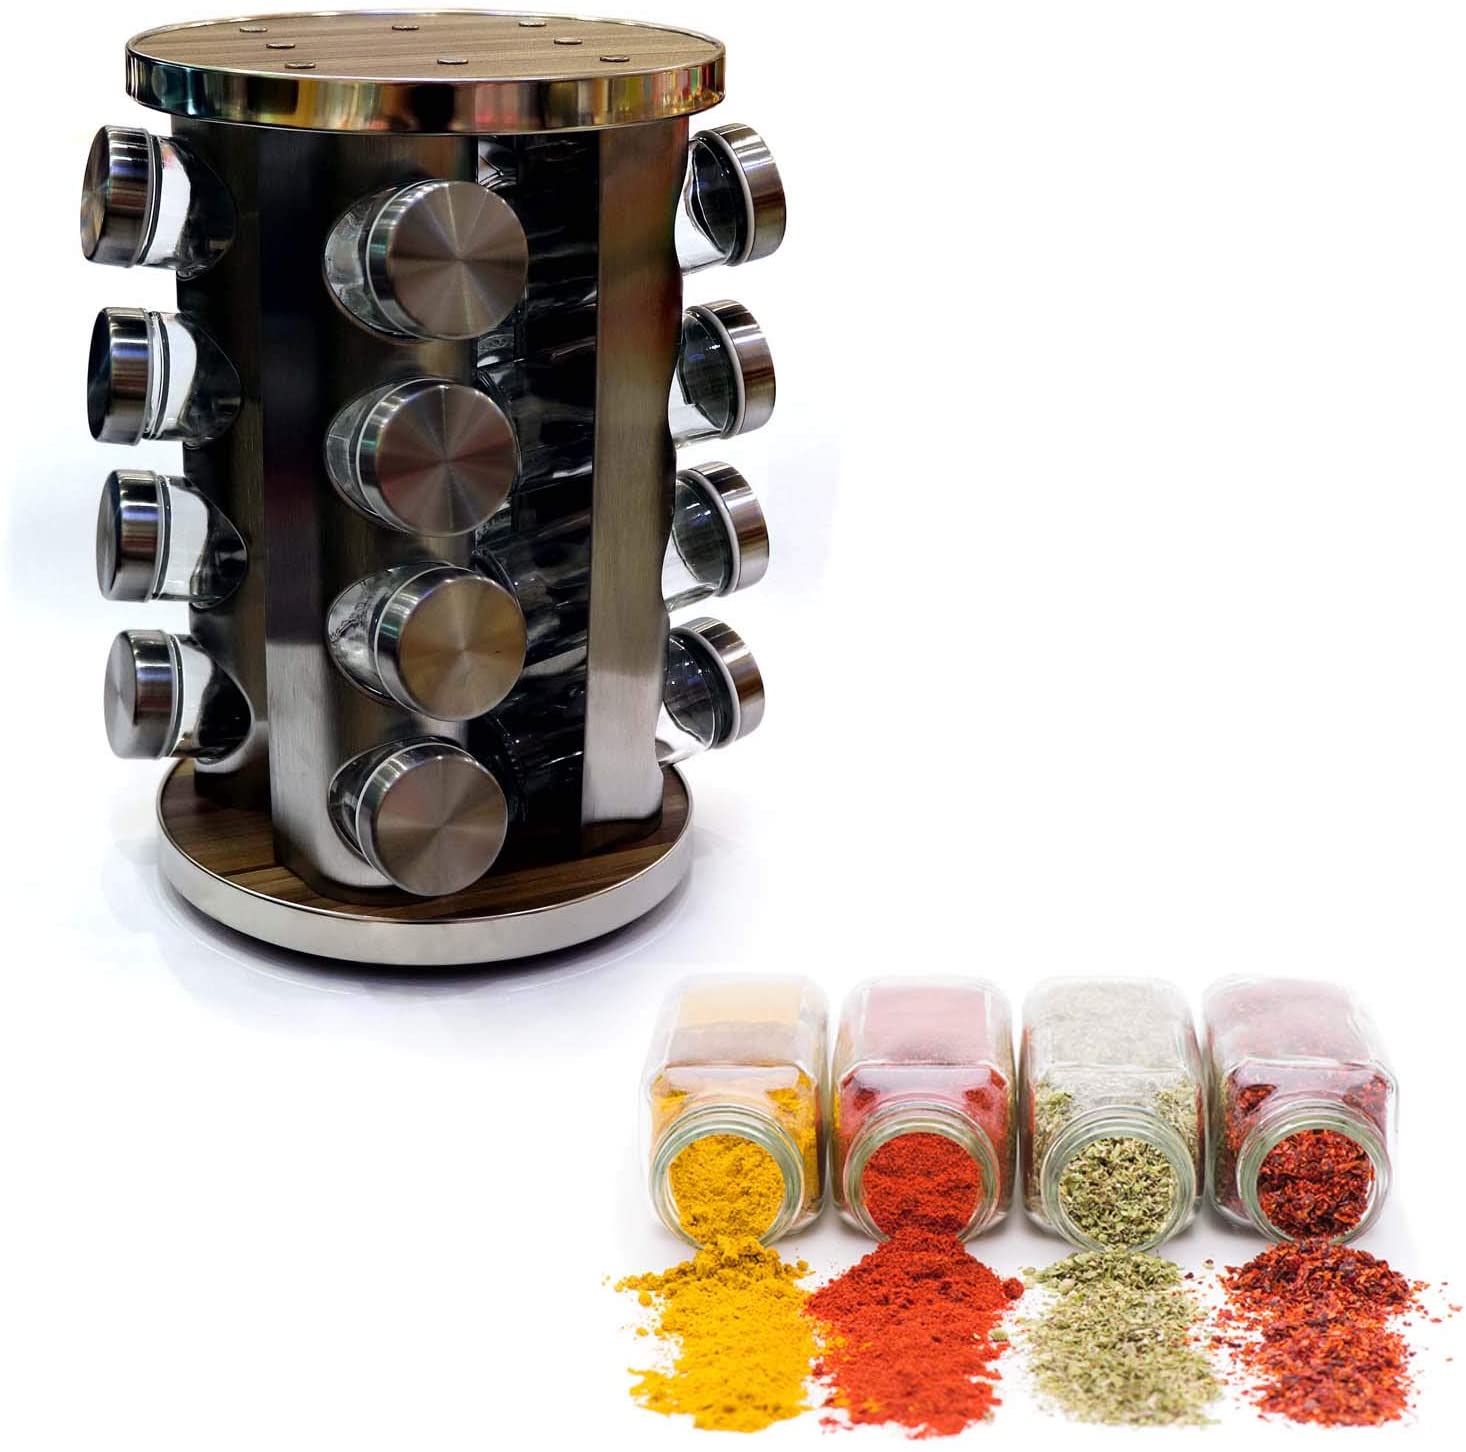 16-Piece Spice Jar Set, Glass Jar Round Stand Silver/Wood W22xL22xH20 Cms